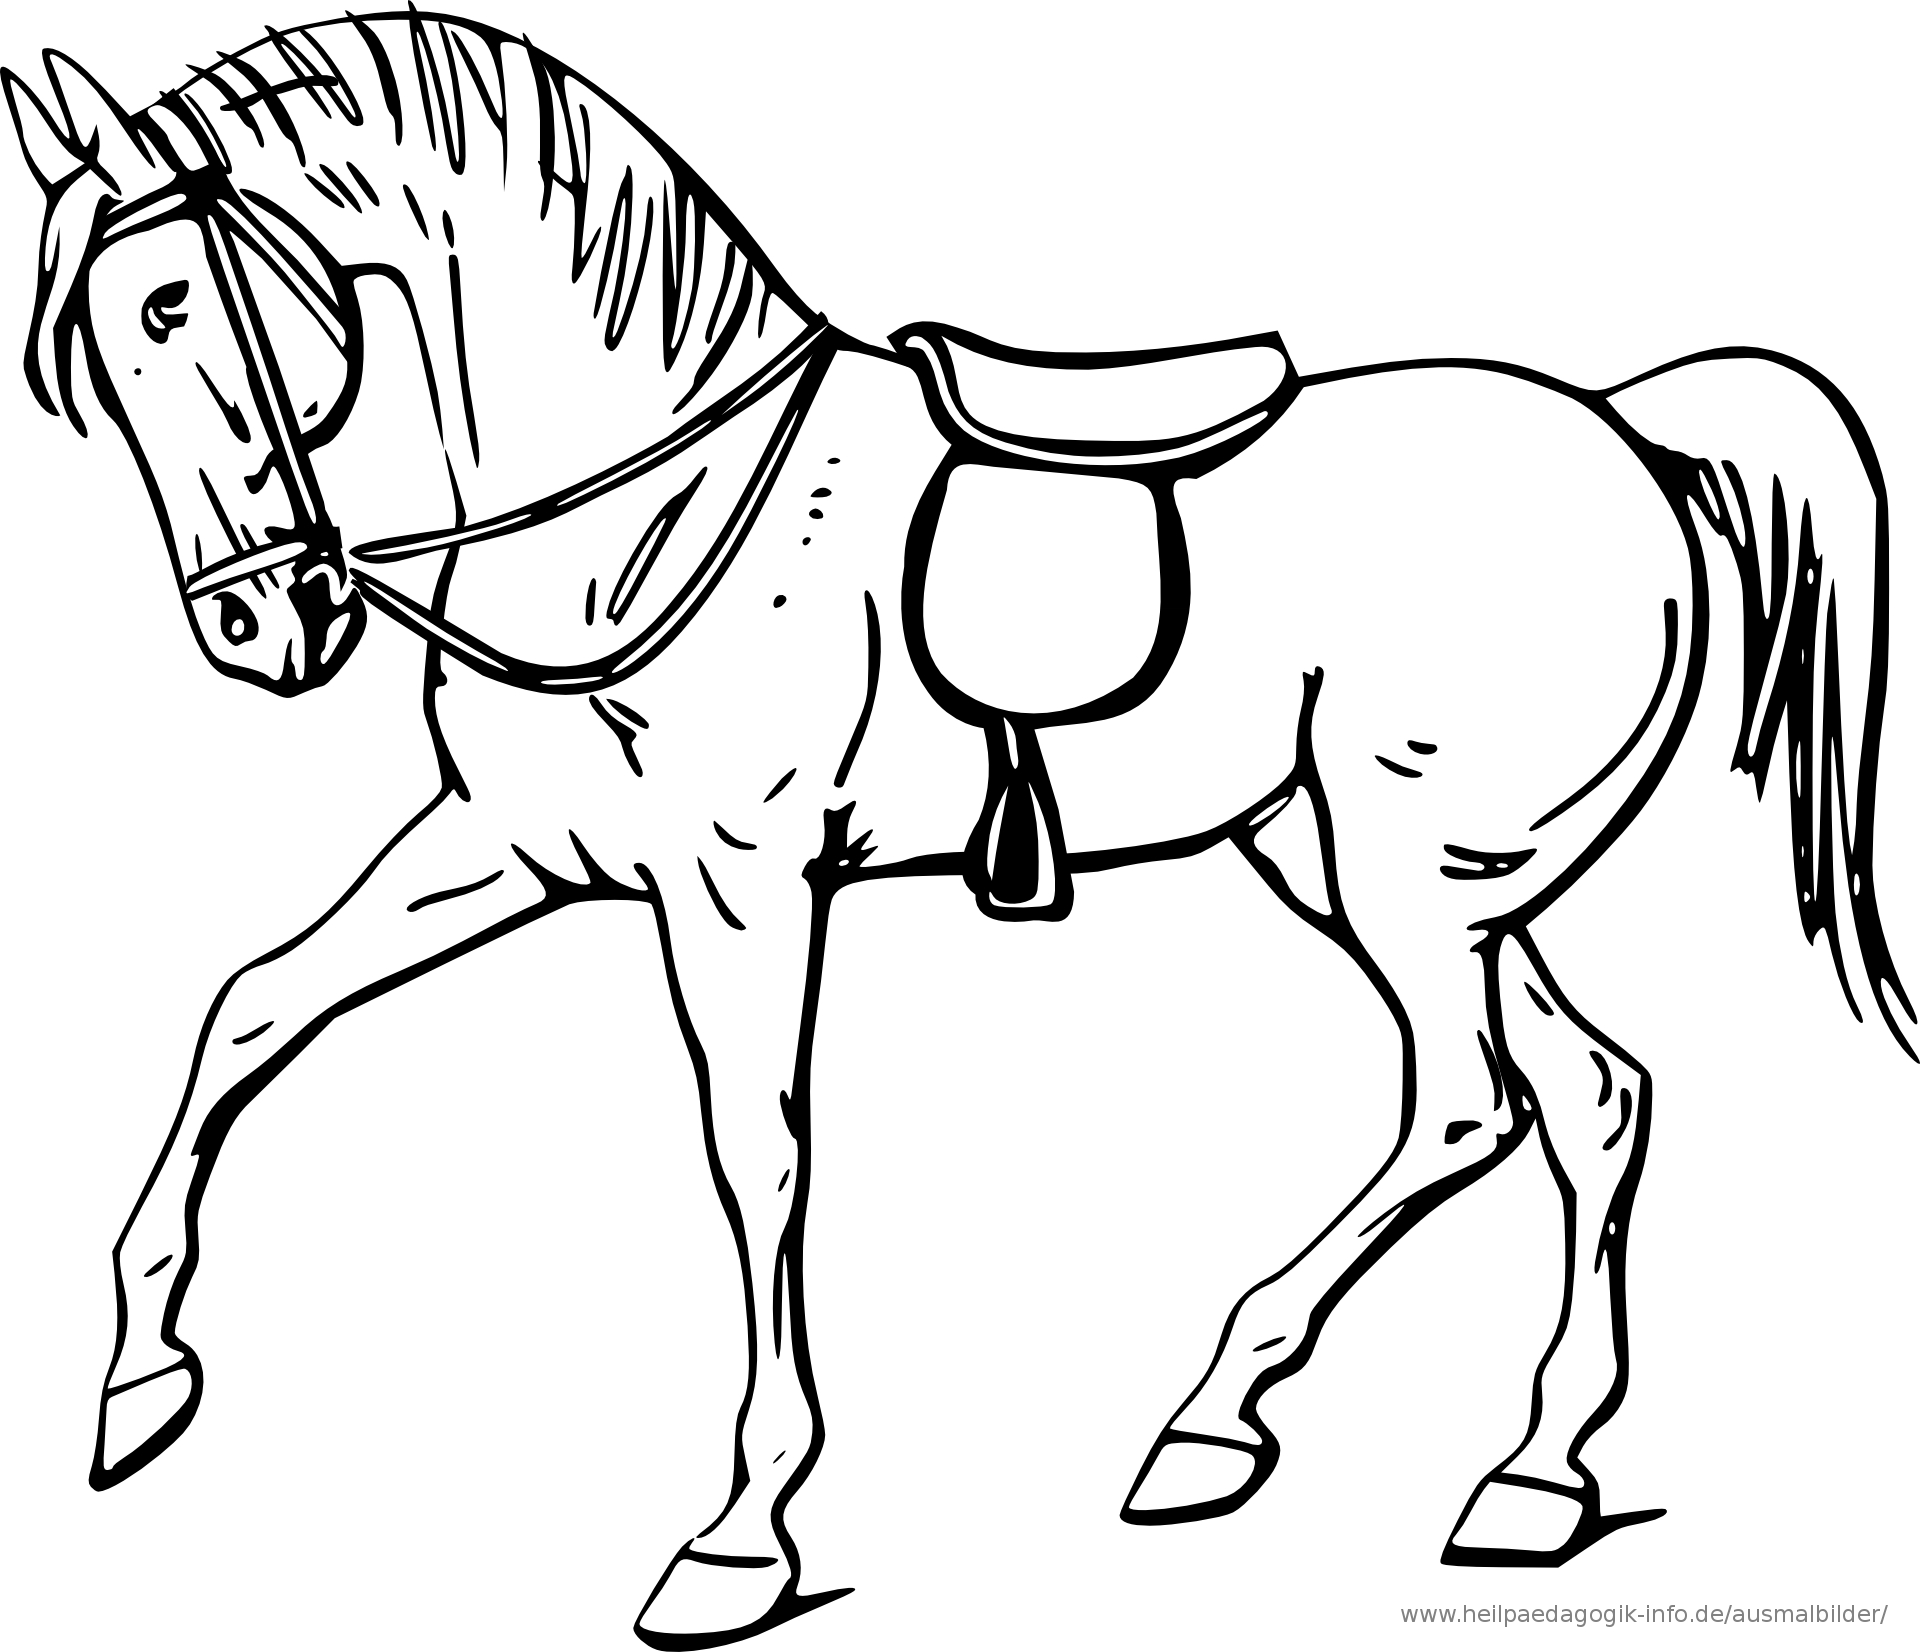 Ausmalbilder Pferde 04 | Ausmalbilder Pferde, Malvorlagen bei Malvorlagen Pferde